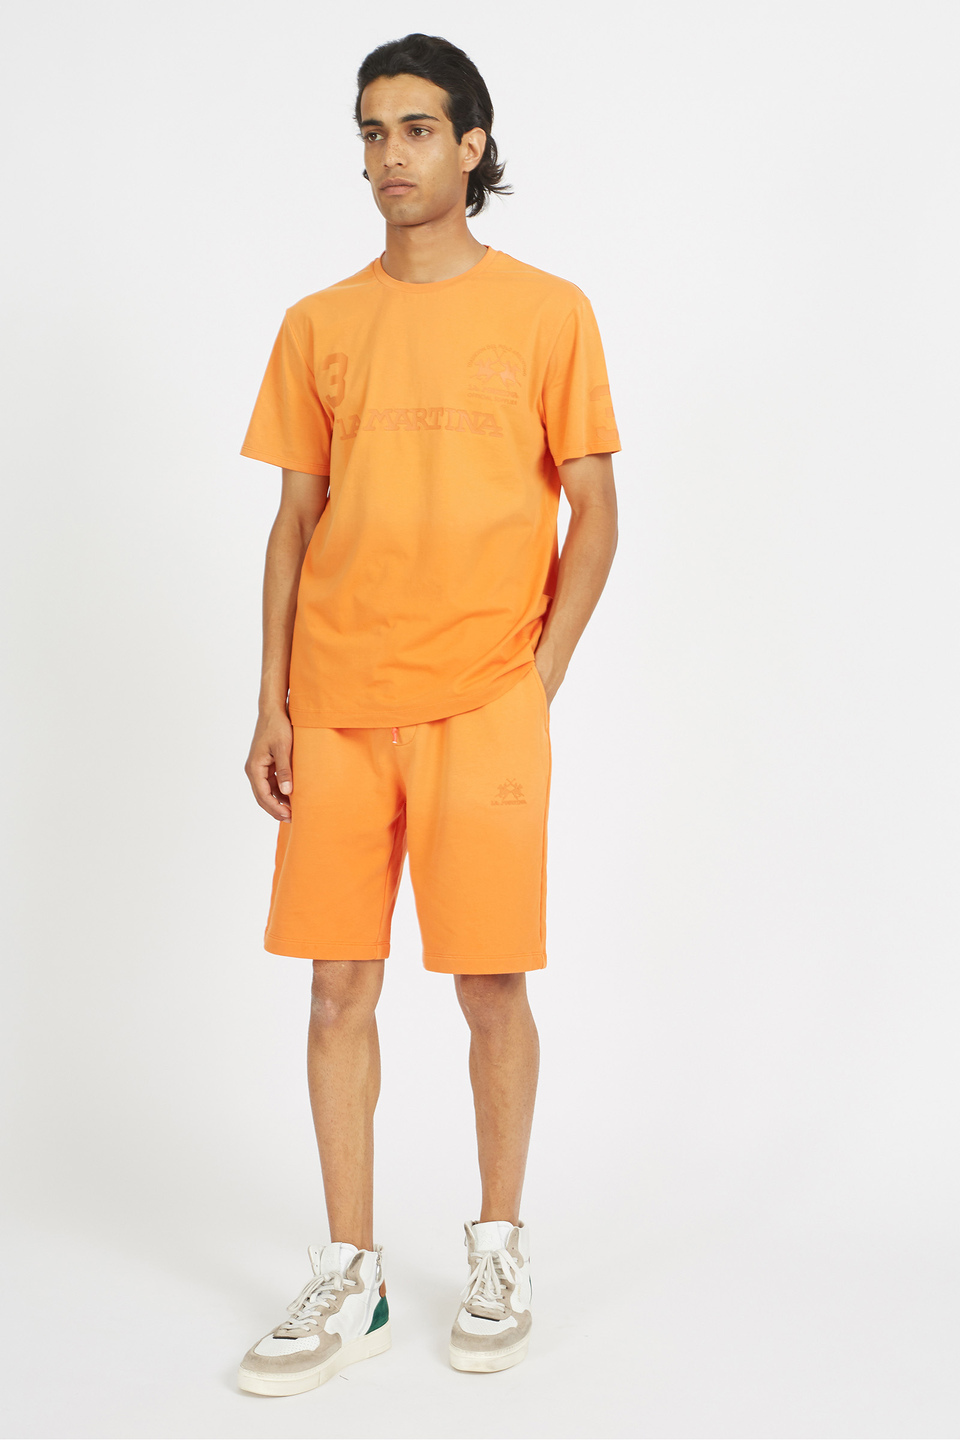 Herren-T-Shirt aus 100 % Baumwolle mit normaler Passform und kurzen Ärmeln - Viktor | La Martina - Official Online Shop